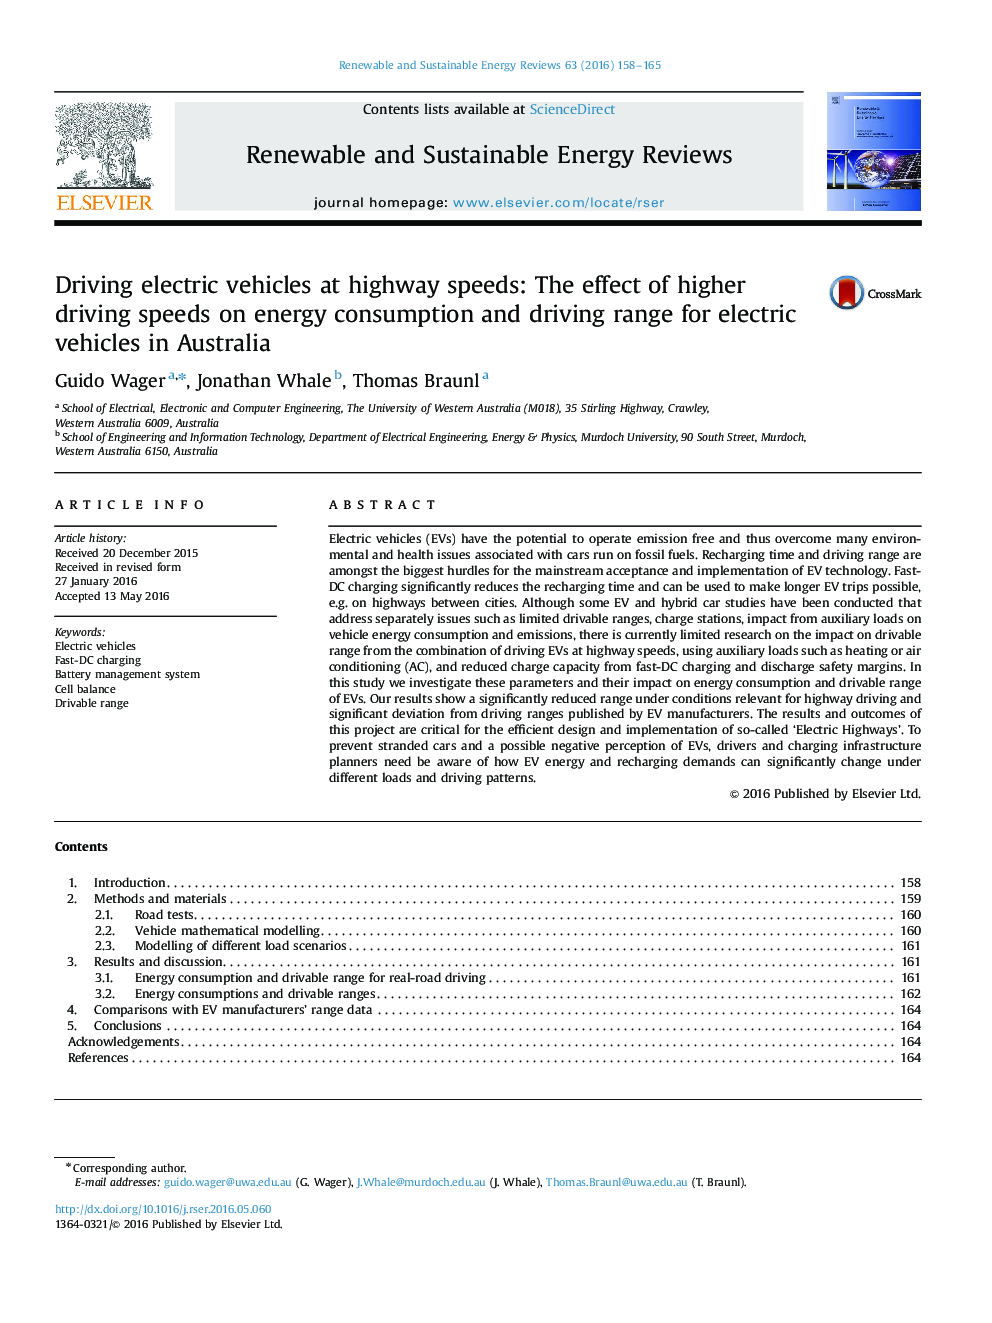 رانندگی وسایل نقلیه الکتریکی در سرعت های بزرگراه: اثر سرعت رانندگی بالاتر بر روی مصرف انرژی و محدوده رانندگی وسایل نقلیه الکتریکی در استرالیا 